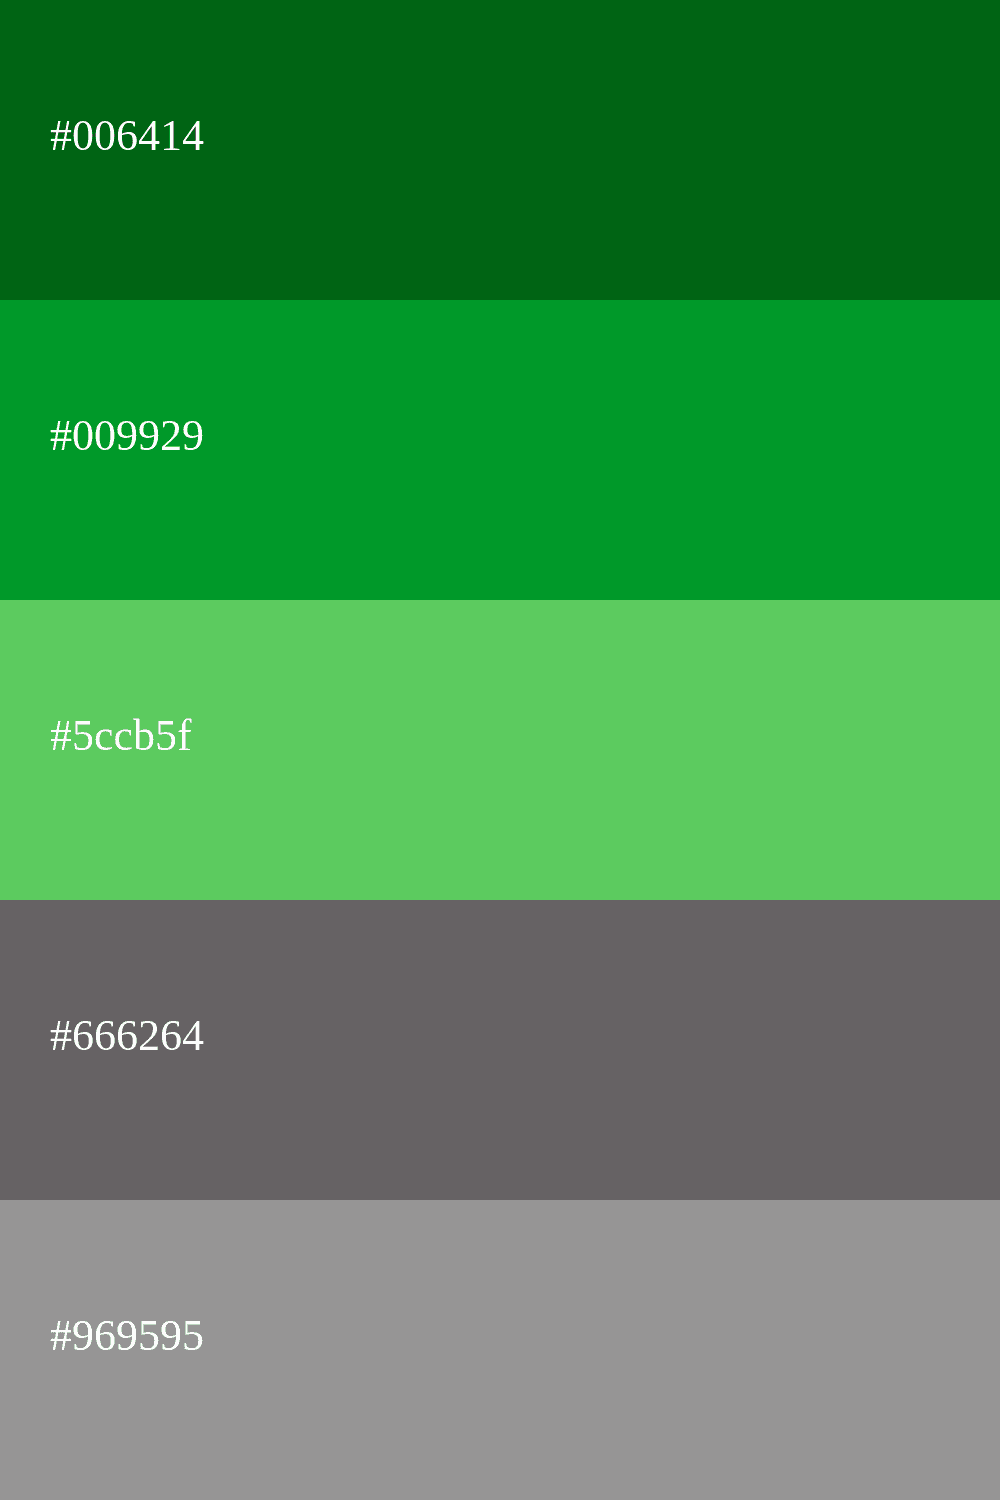 cor verde e cinza